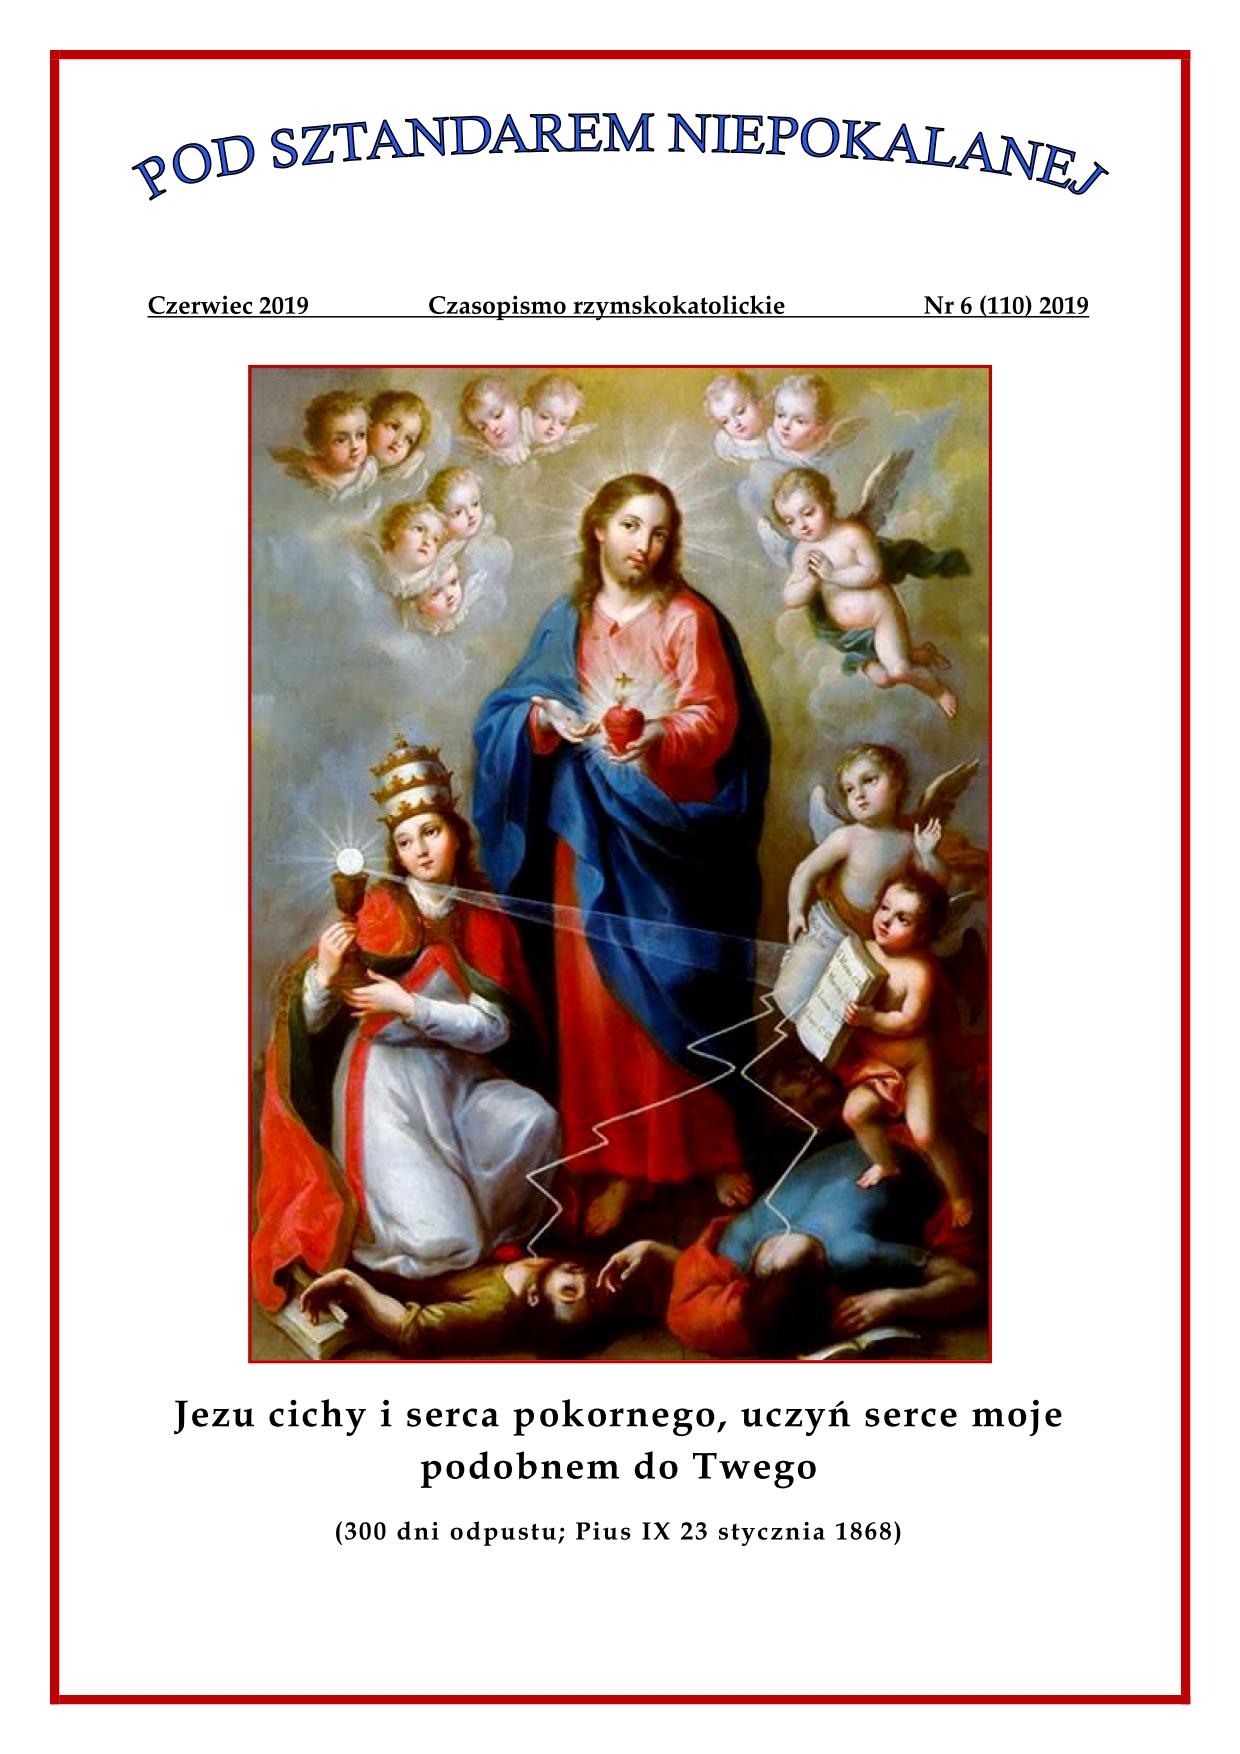 "Pod sztandarem Niepokalanej". Nr 110. Czerwiec 2019. Czasopismo rzymskokatolickie.